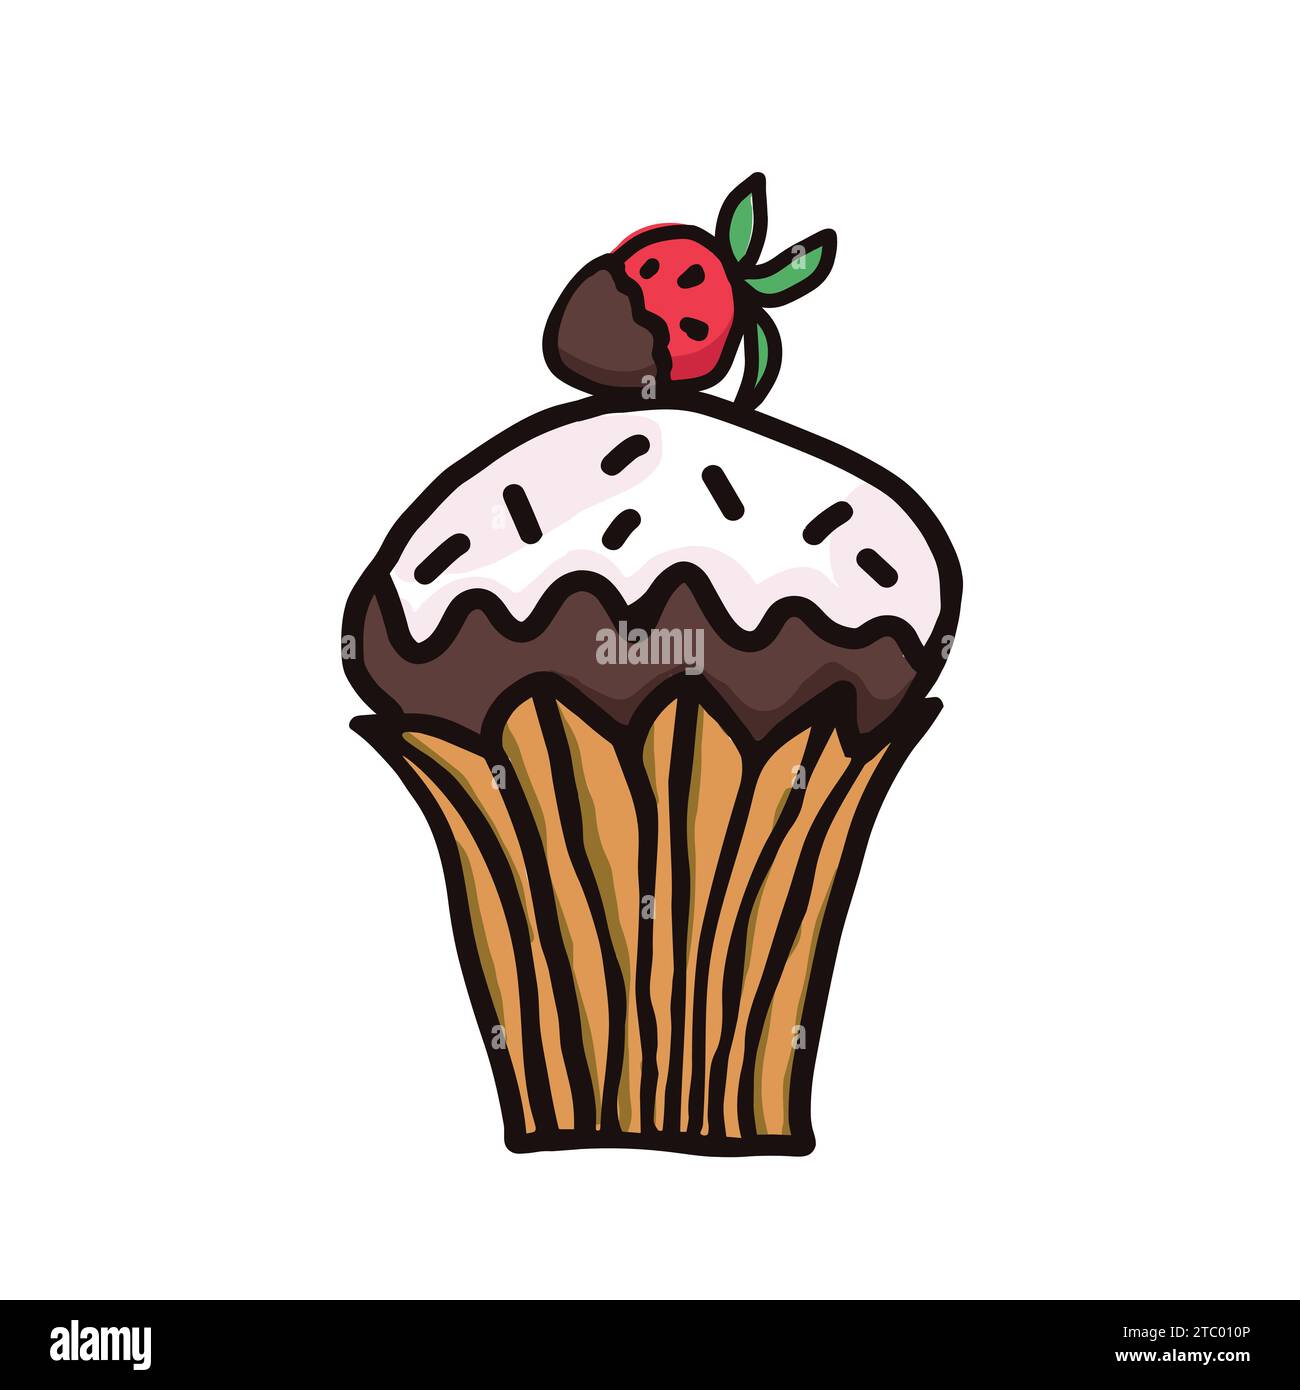 Illustrations esquissées de vecteur de nourriture sucrée de dessert. Macaron, muffin, pudding, gâteau aux fruits. Illustration vectorielle colorée dessinée à la main isolée sur wh Illustration de Vecteur